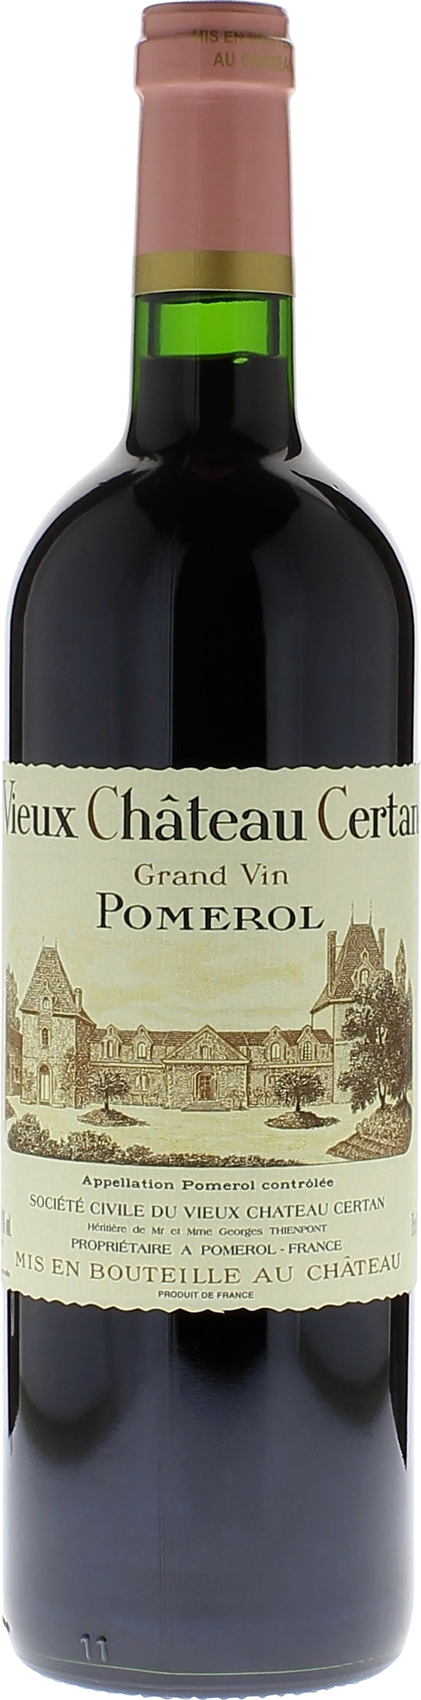 Vieux Château  Certan 2015 12 per case